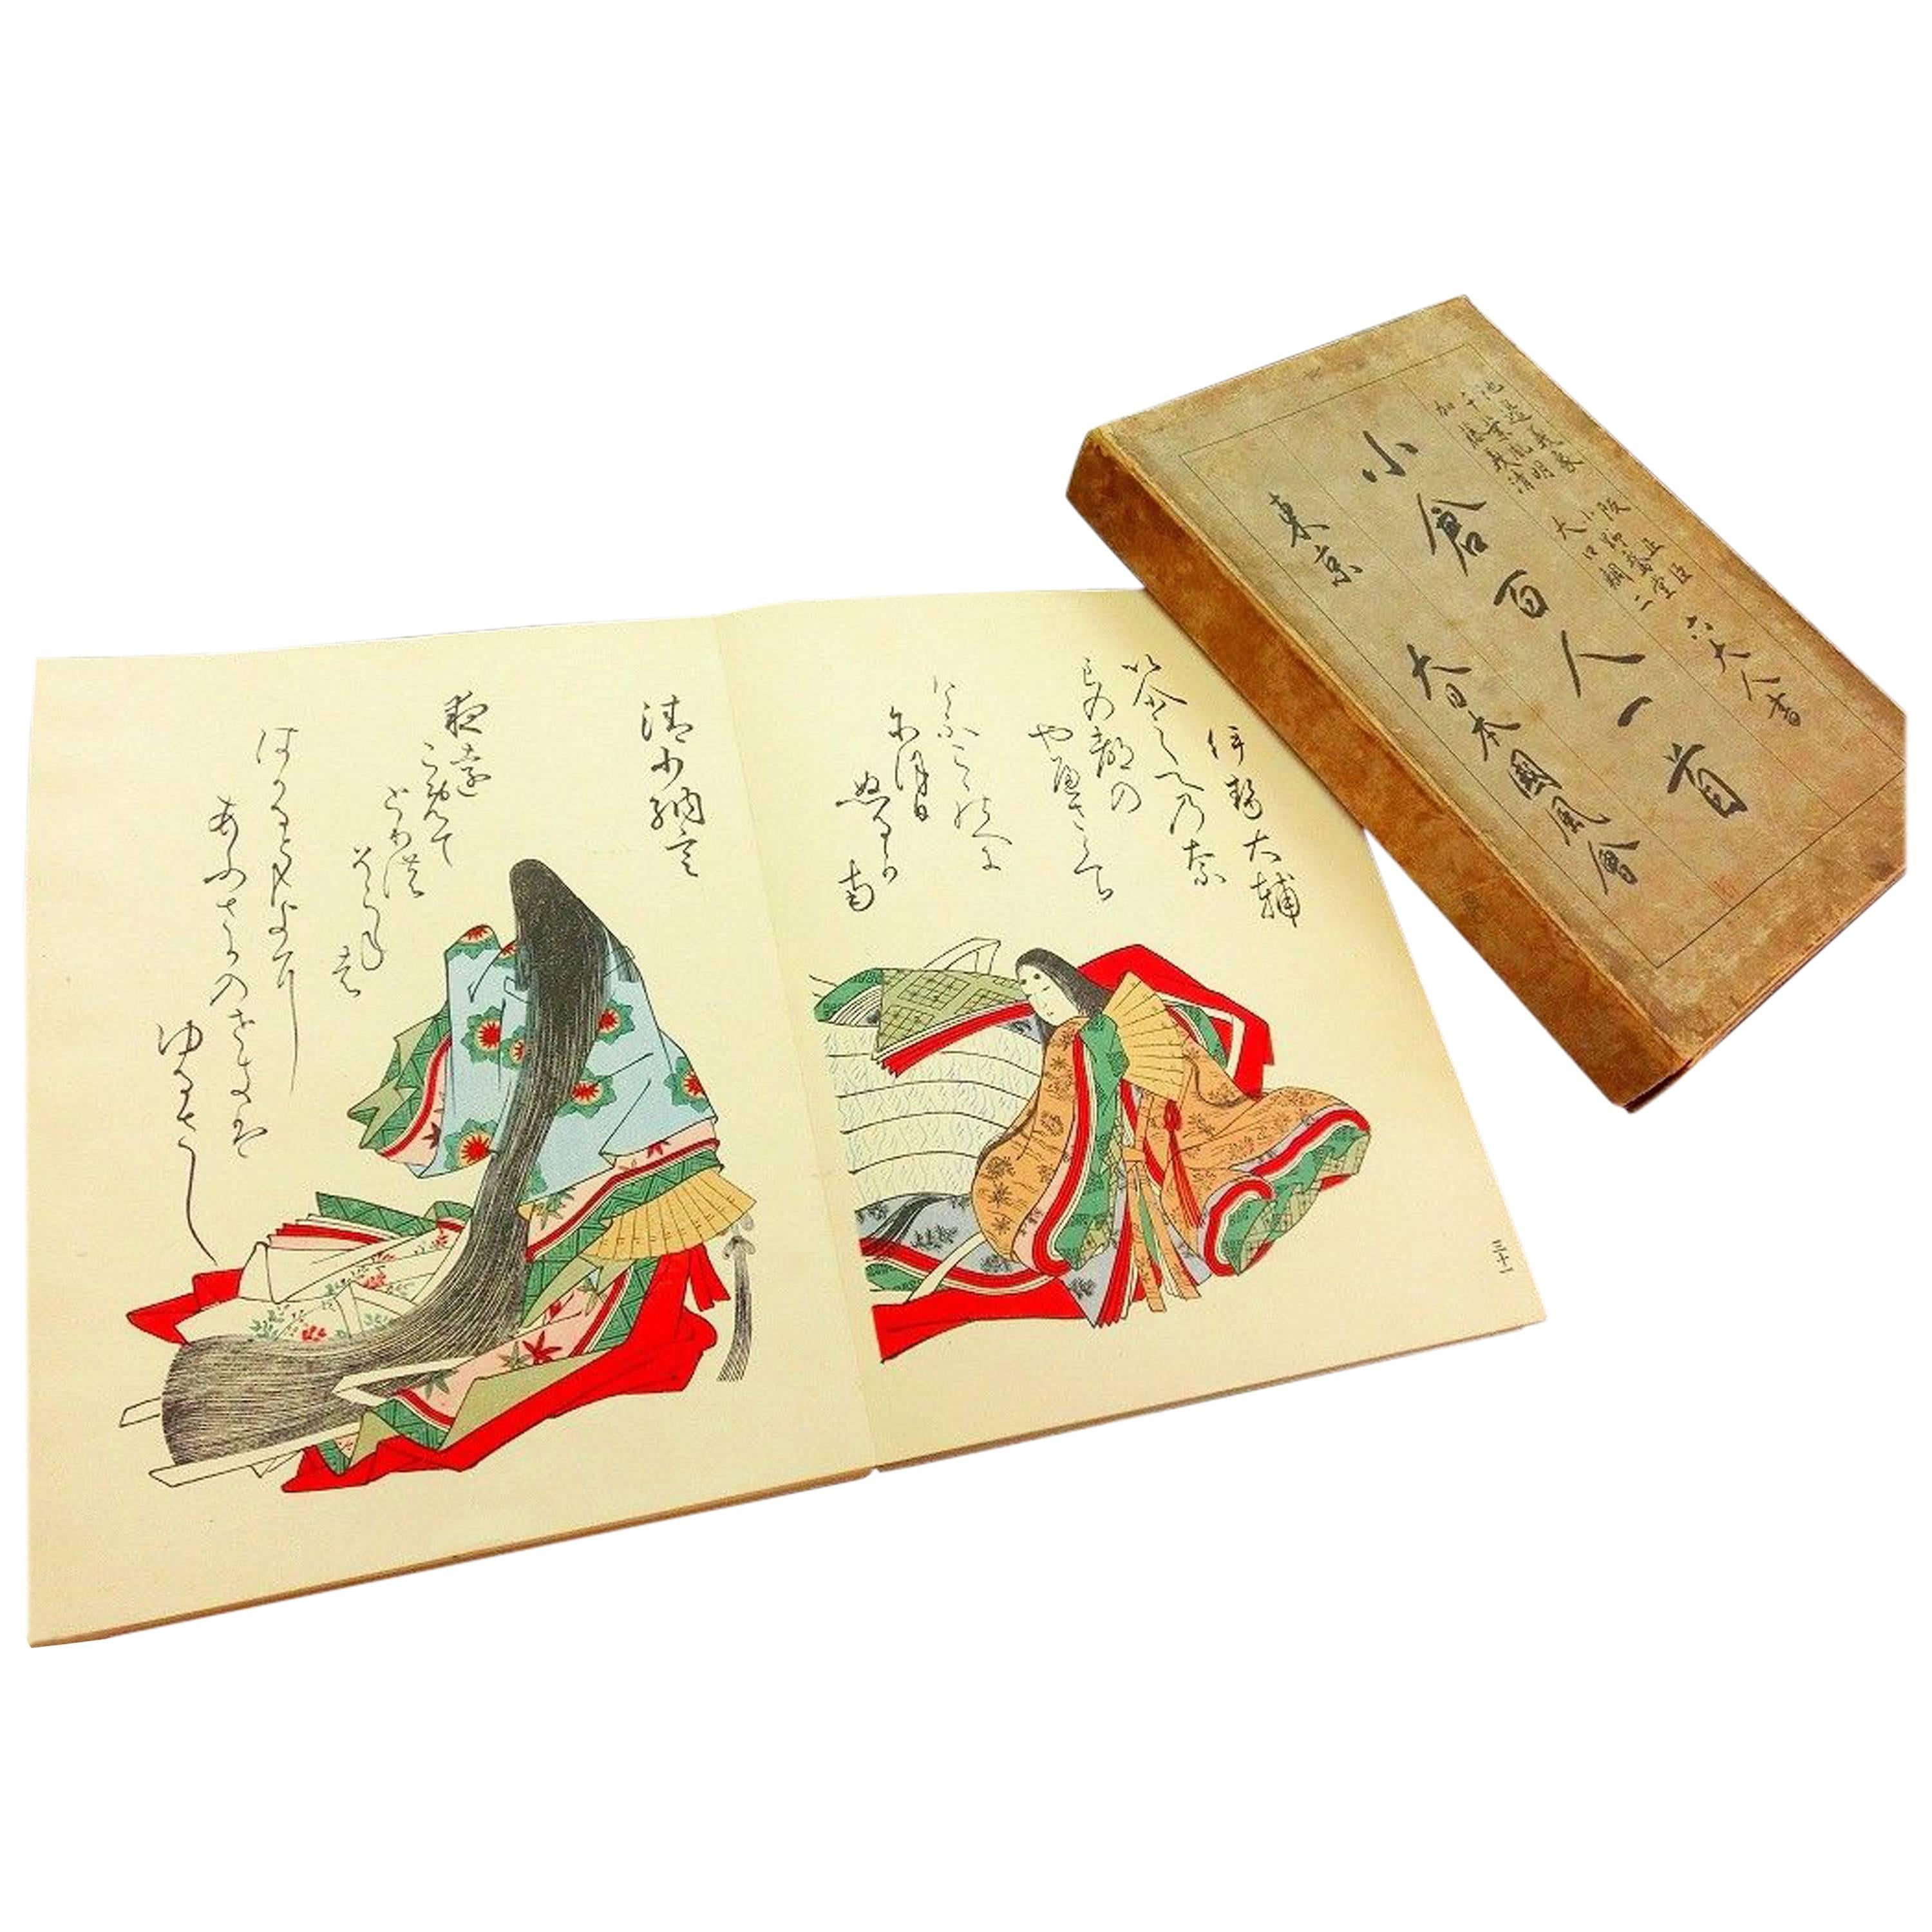 Japan Color 100 Poets Woodblock Prints Album 100 Frameable Prints, 1914